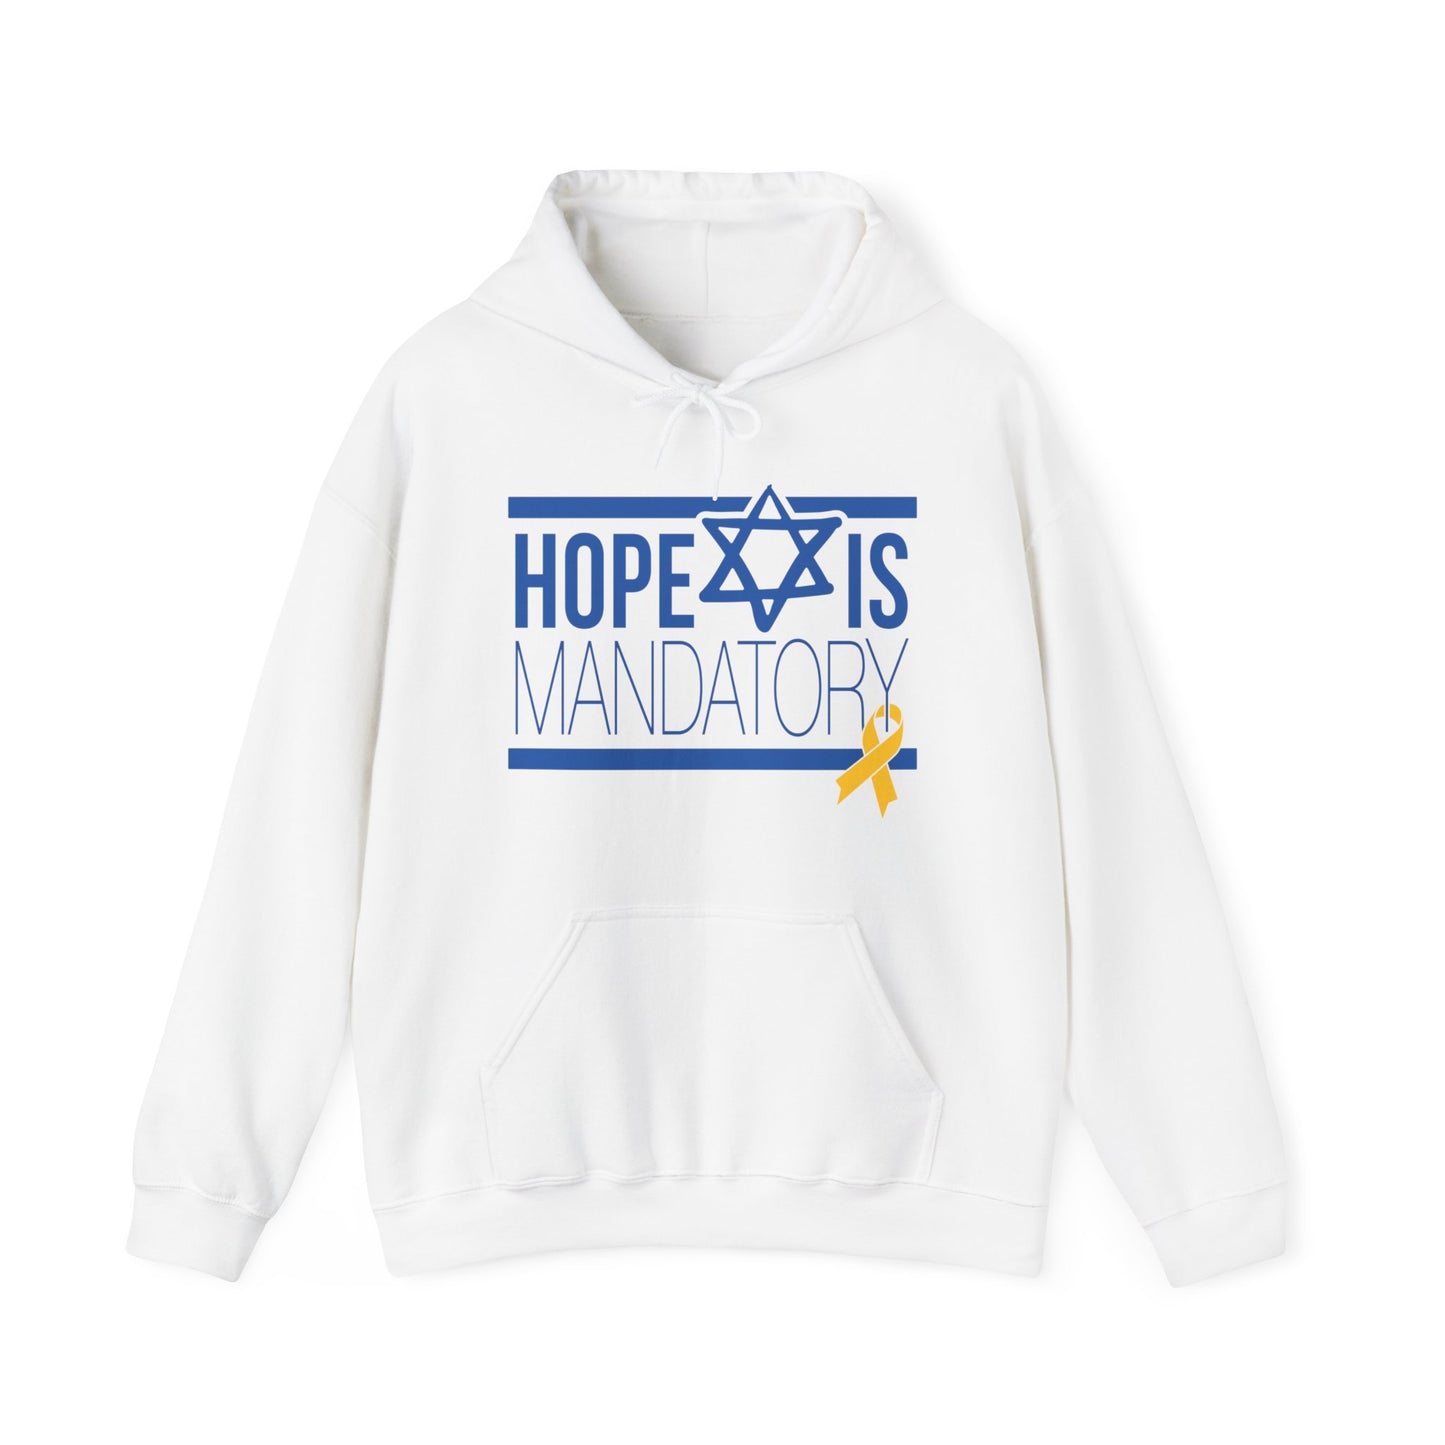 the HOPE hoodie